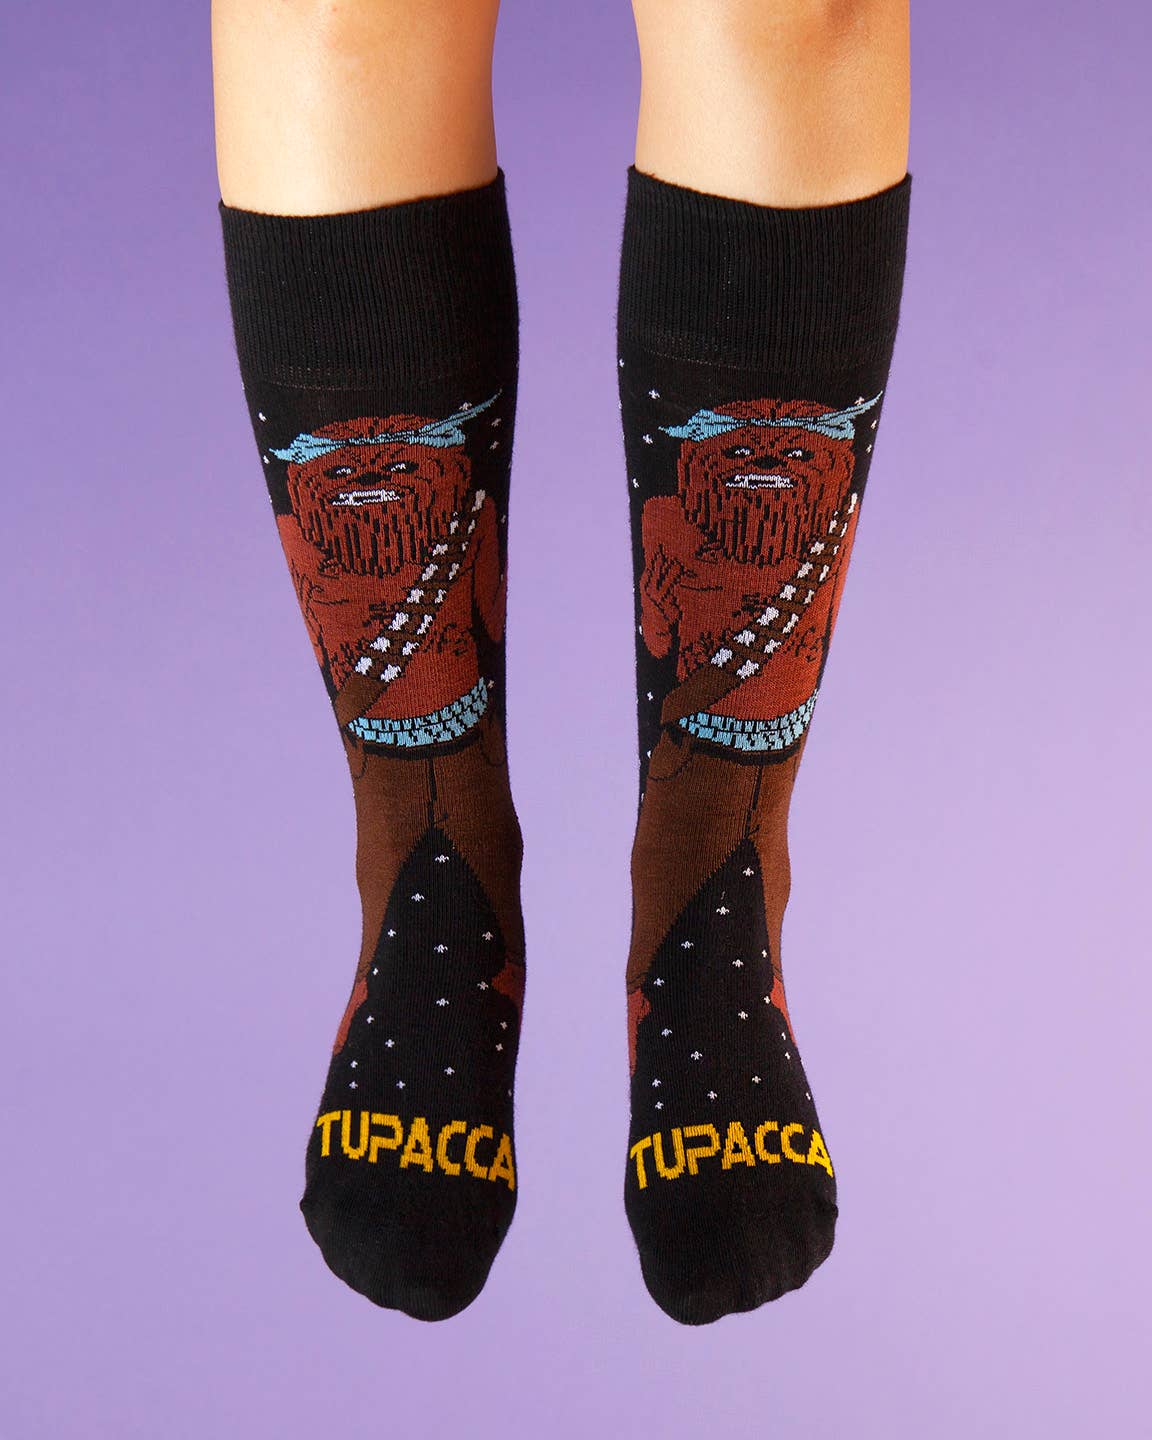 Tupacca | USA Made Gift Socks